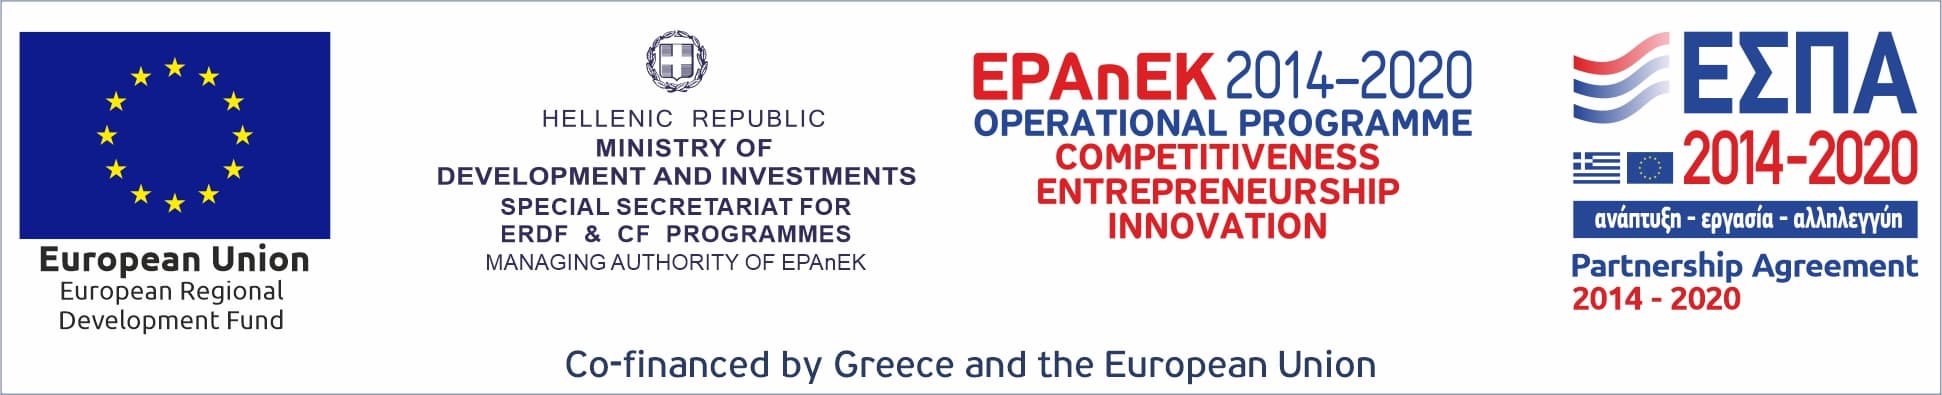 Banner for EPAnEK 2014-2020 operational programme